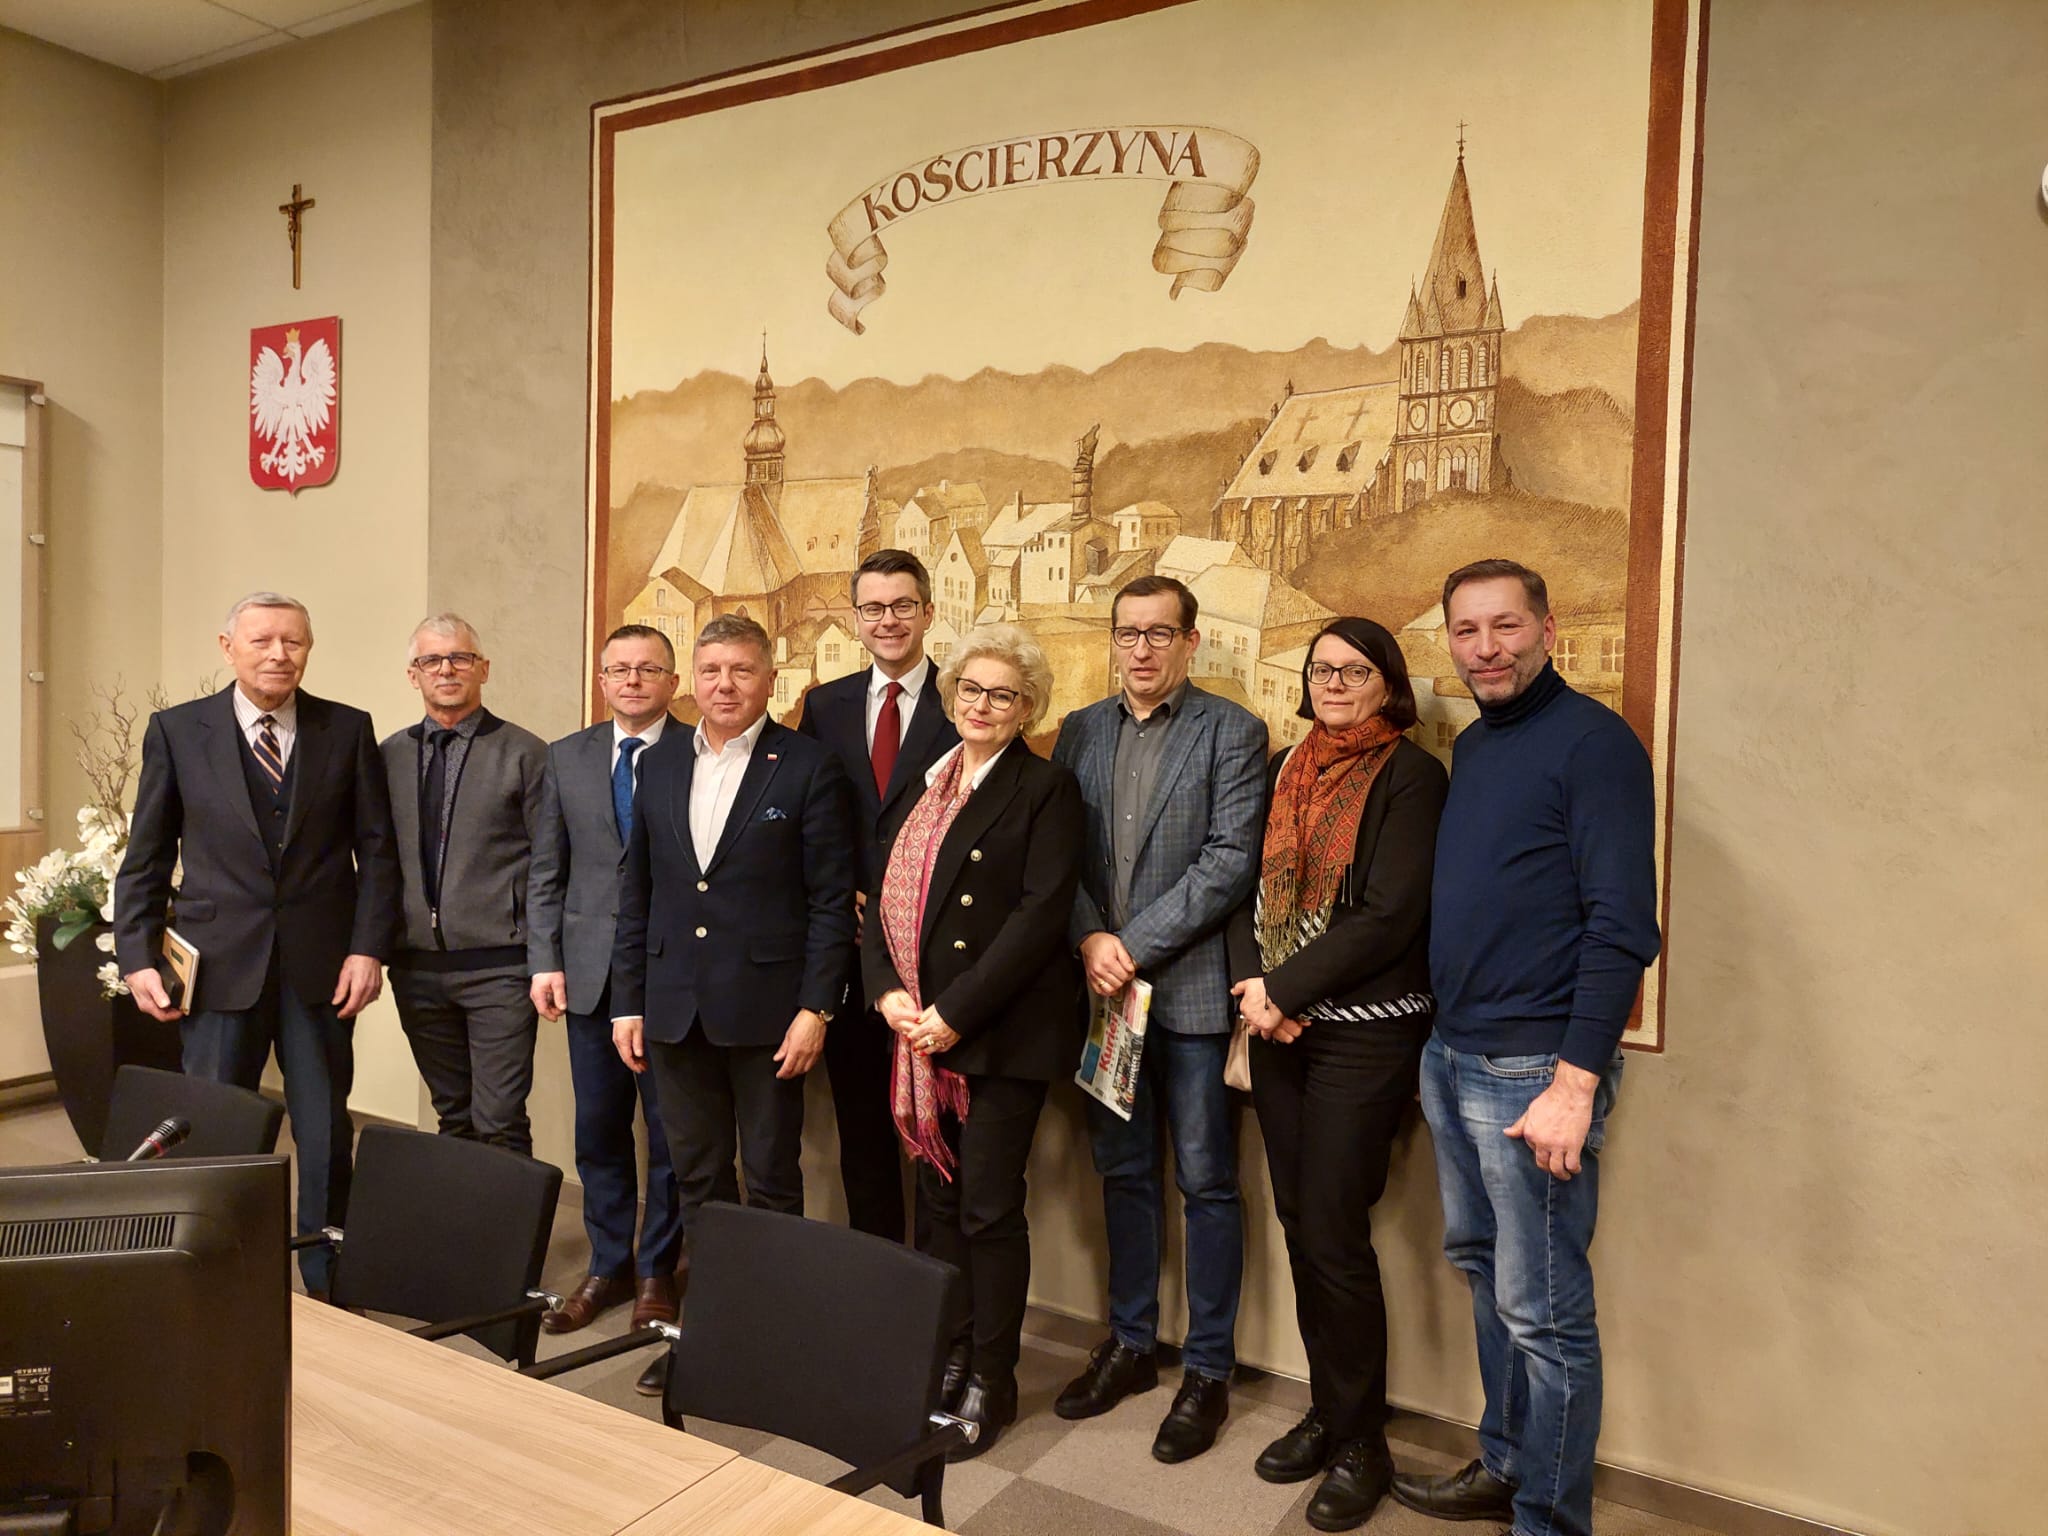 Dziś poseł Piotr Müller spotkał się z burmistrzem miasta Michałem Majewskim, radnymi z Kościerzyny i powiatu kościerskiego. Polityk rozmawiał o przyszłości i rozwoju tego pięknego regionu.